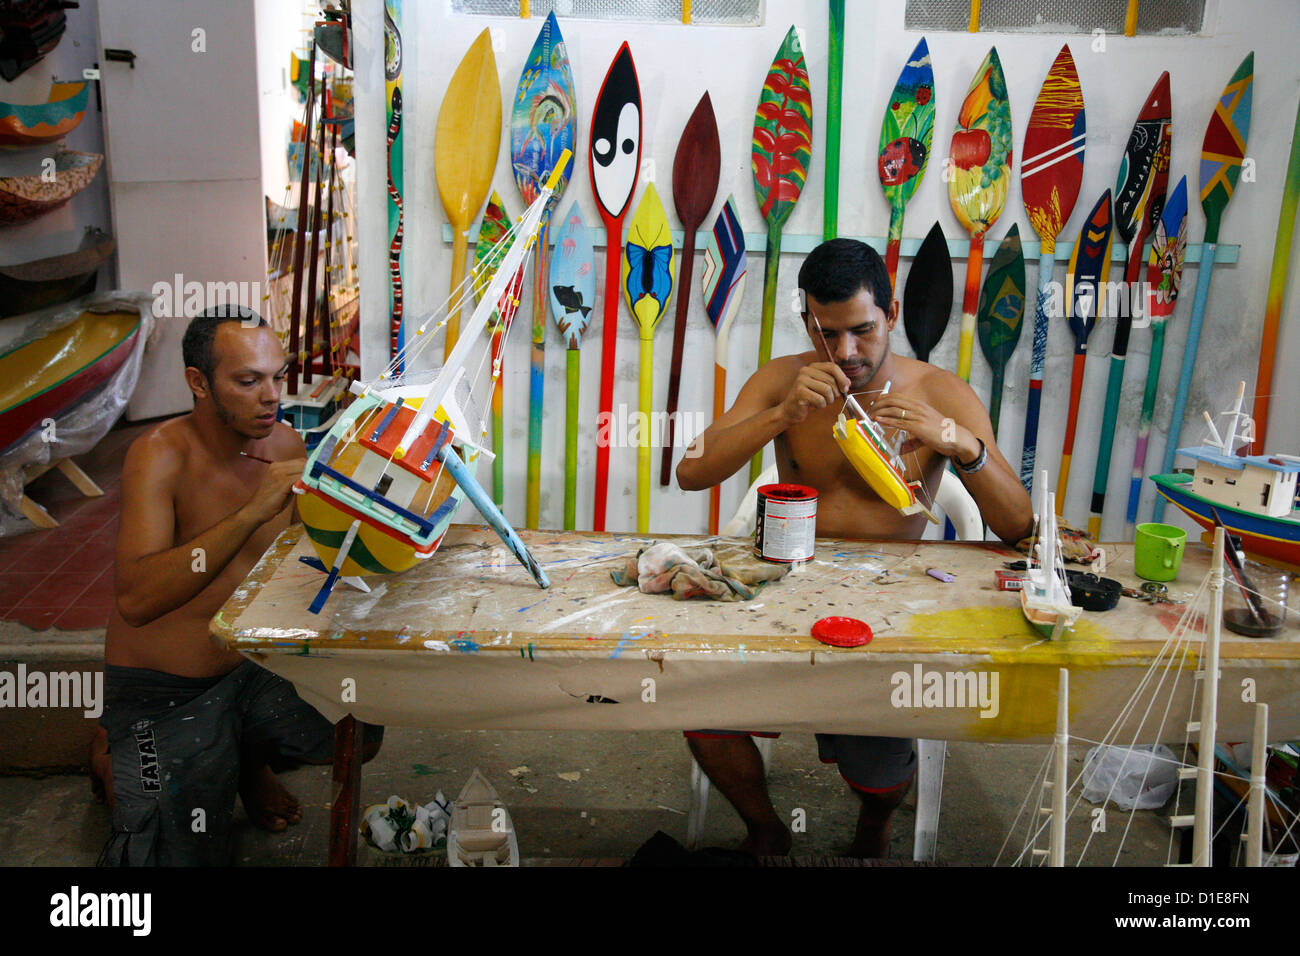 Artiste à un atelier local de faire des bateaux en bois comme souvenirs, Parati, l'État de Rio de Janeiro, Brésil, Amérique du Sud Banque D'Images